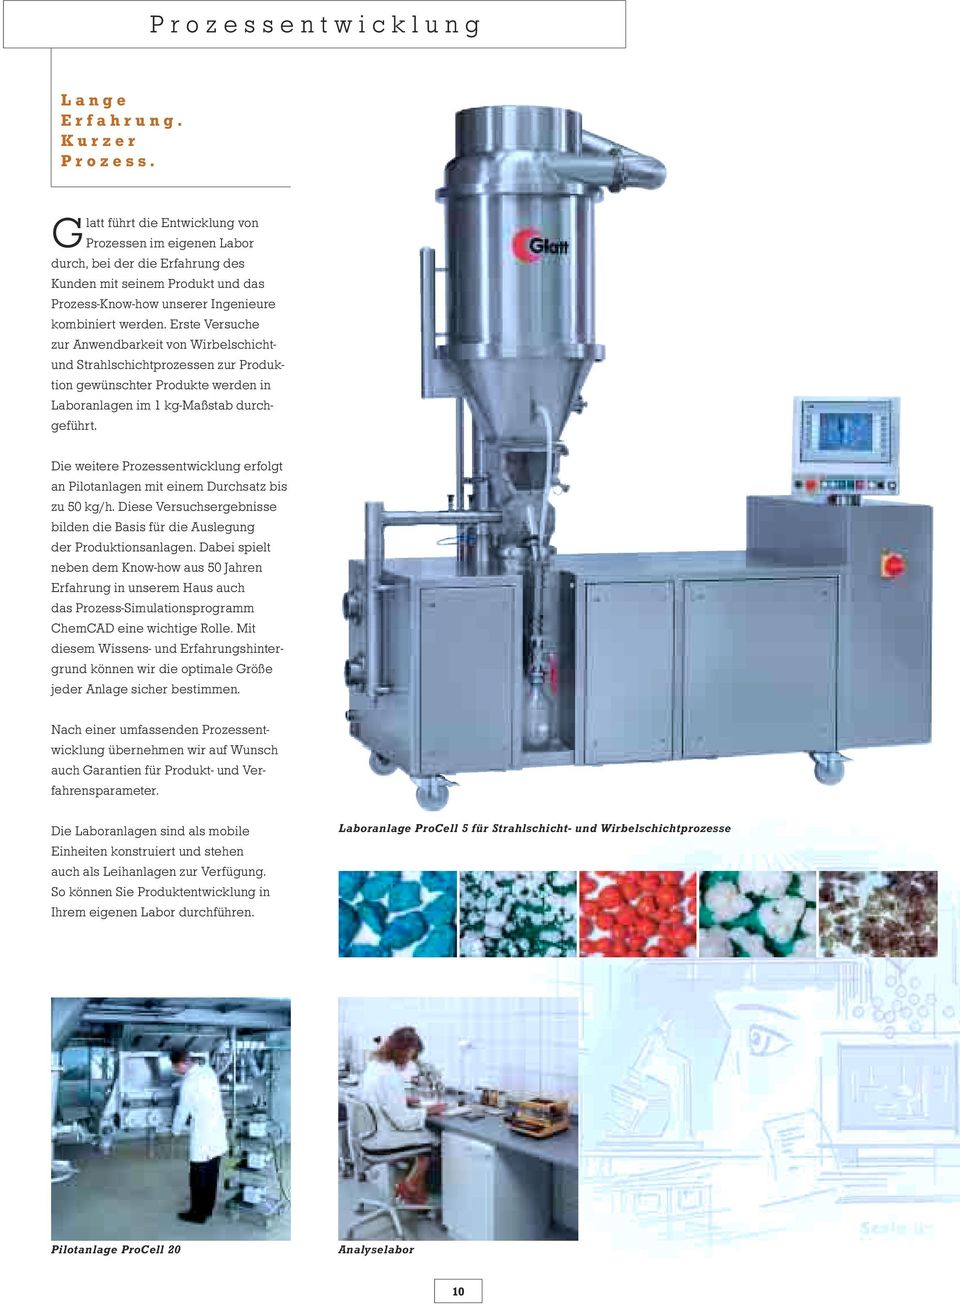 Erste Versuche zur Anwendbarkeit von Wirbelschichtund Strahlschichtprozessen zur Produktion gewünschter Produkte werden in Laboranlagen im 1 kg-maßstab durchgeführt.